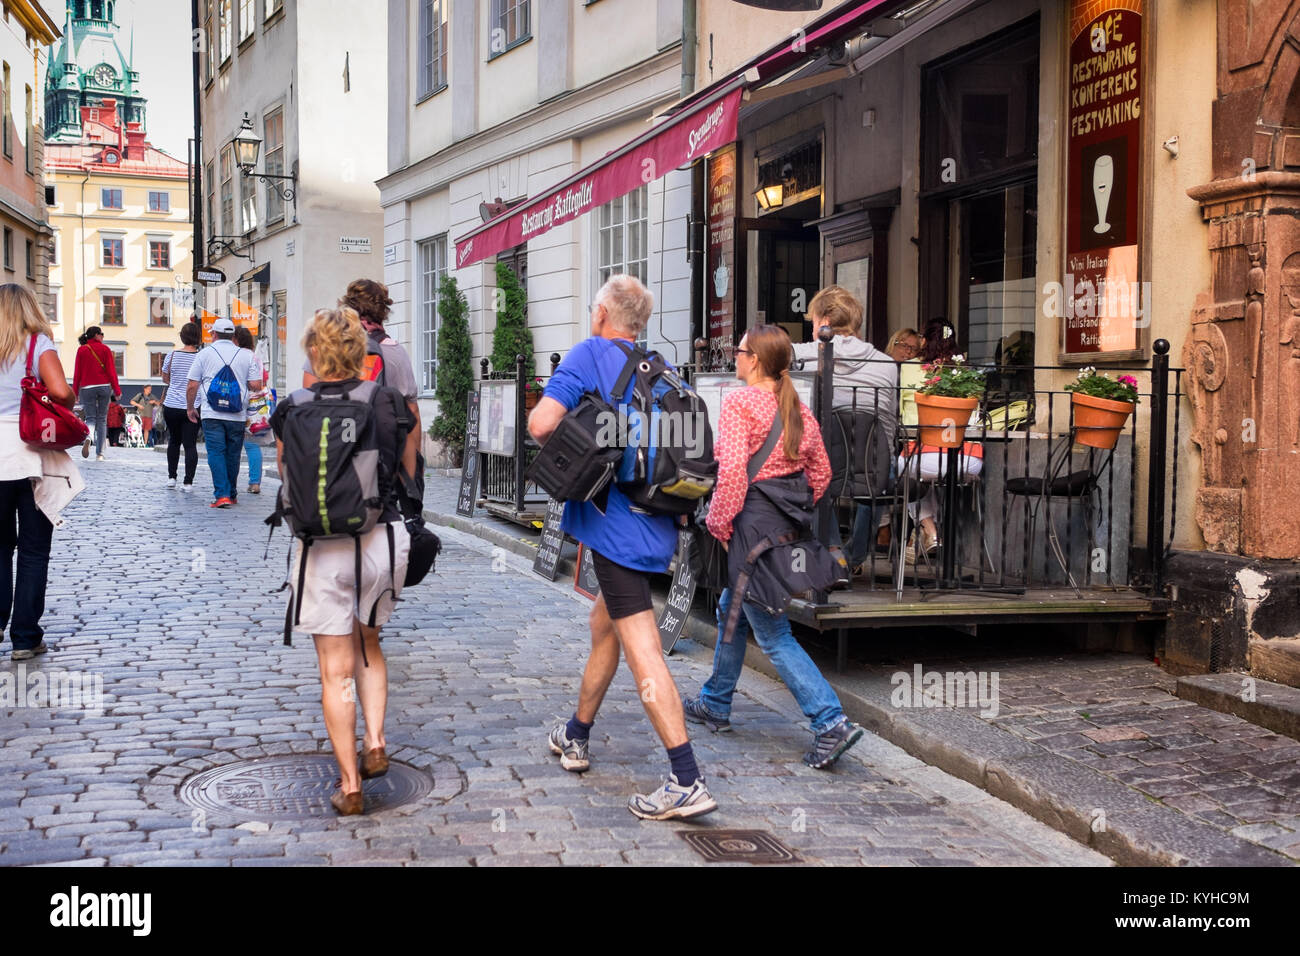 Stoccolma strada trafficata nel centro storico di Gamla Stan, o Città Vecchia, popolare con i turisti. La folla a piedi su strade acciottolate, mangiare in caffetterie. Foto Stock